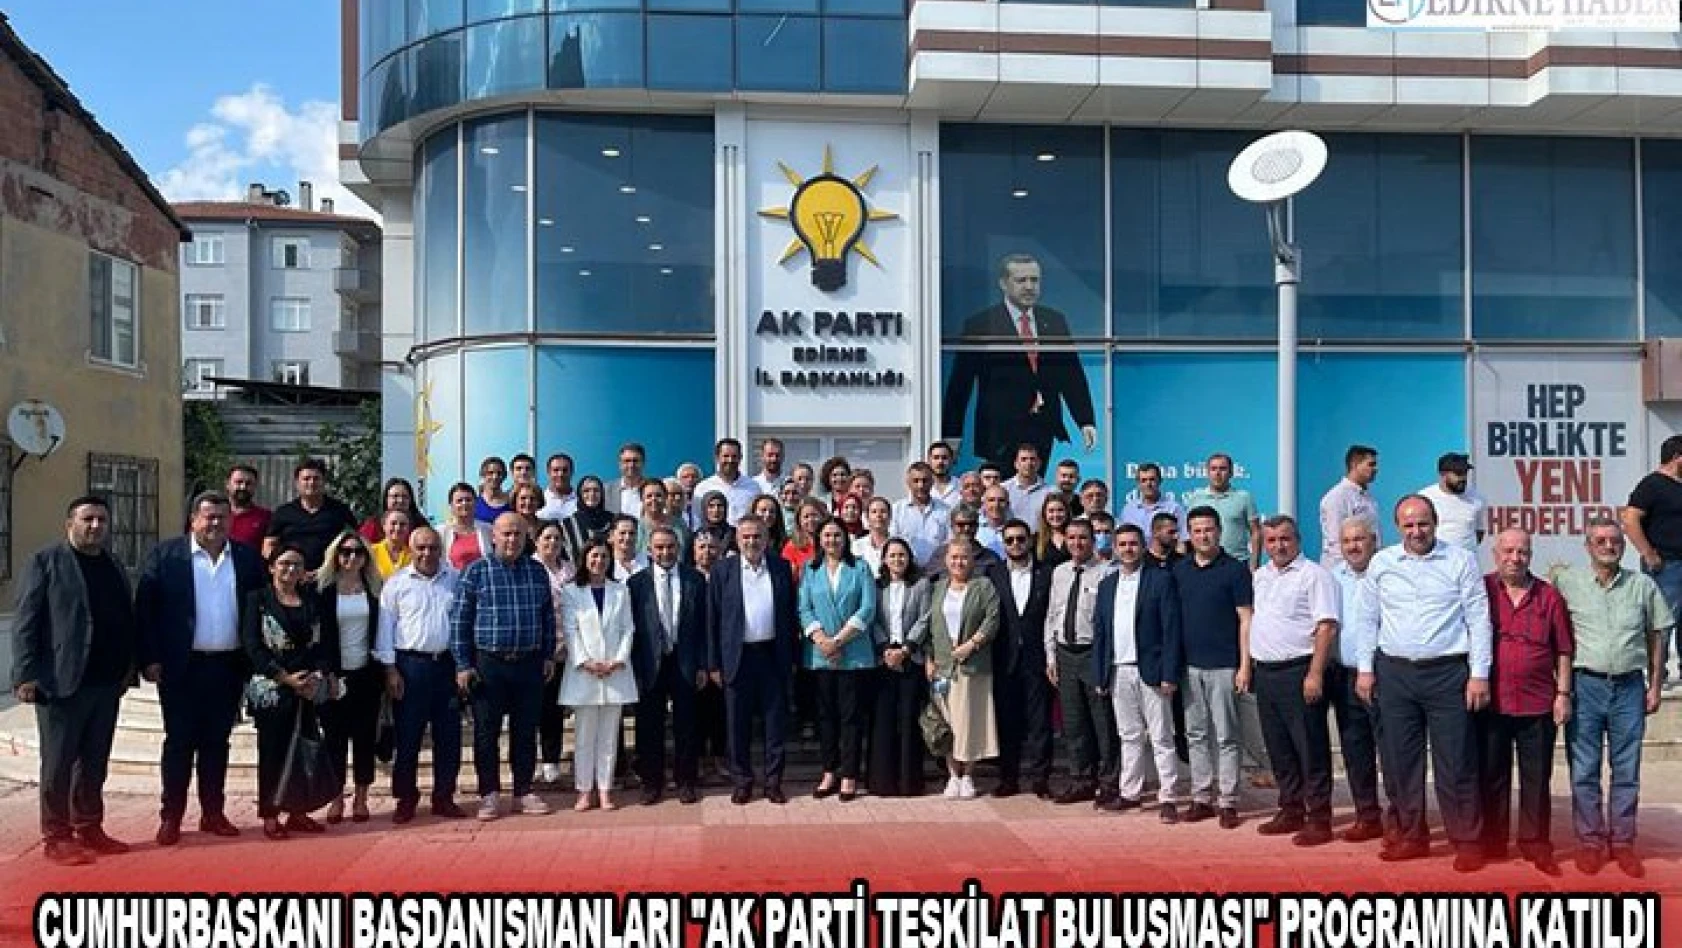 Cumhurbaşkanı başdanışmanları 'AK Parti Teşkilat Buluşması' programına katıldı